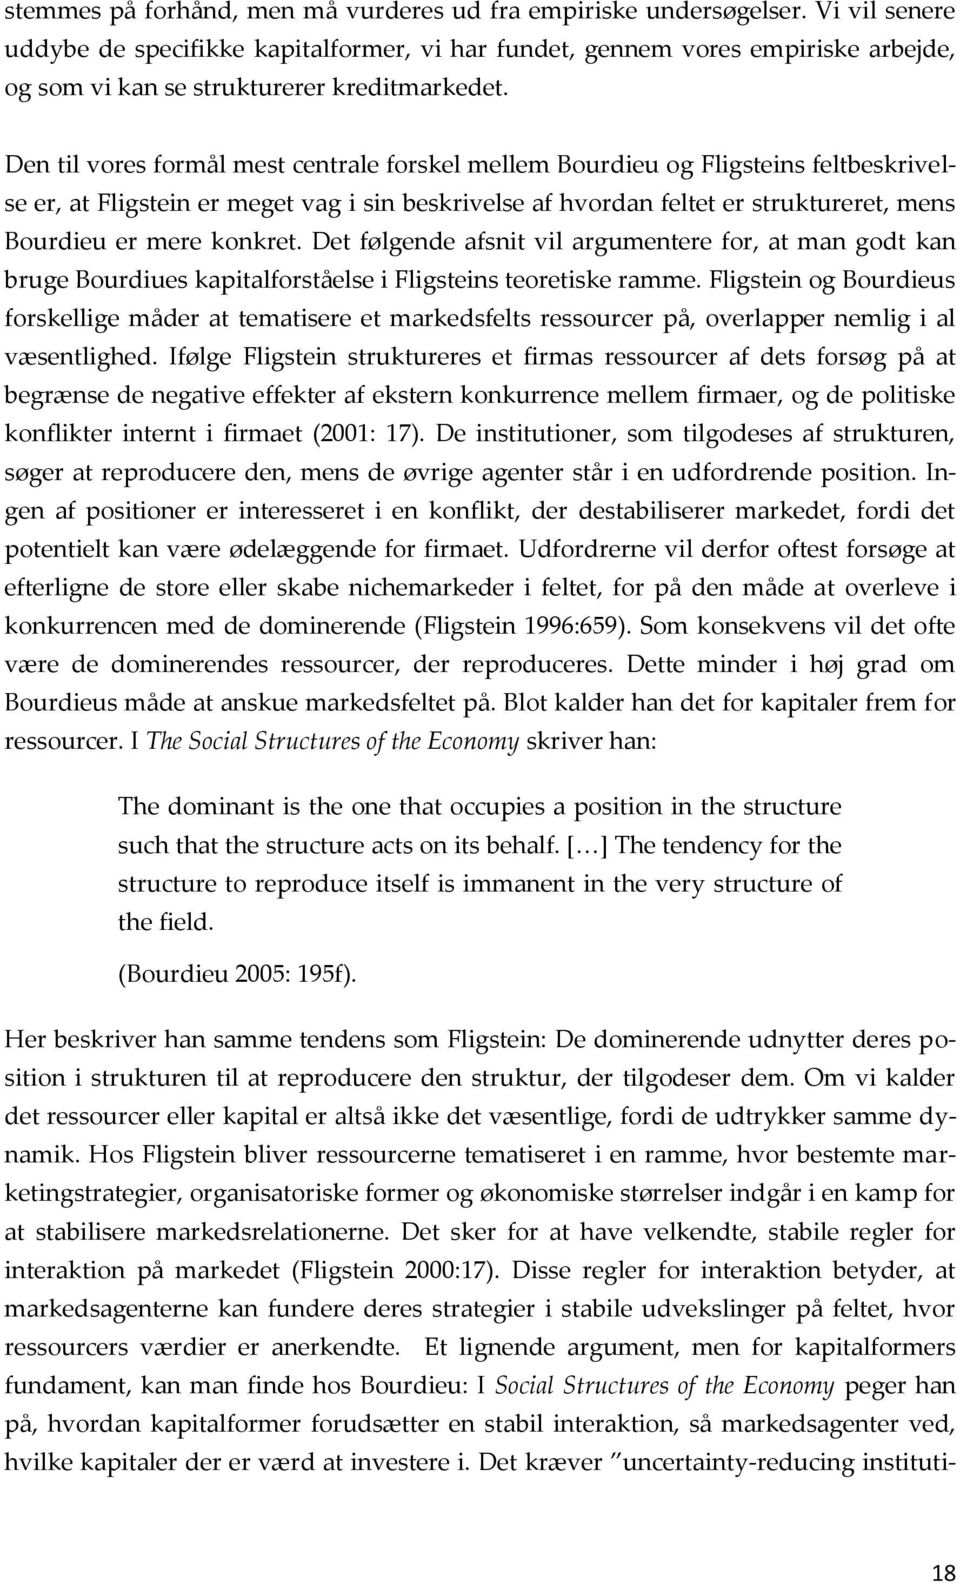 Den til vores formål mest centrale forskel mellem Bourdieu og Fligsteins feltbeskrivelse er, at Fligstein er meget vag i sin beskrivelse af hvordan feltet er struktureret, mens Bourdieu er mere